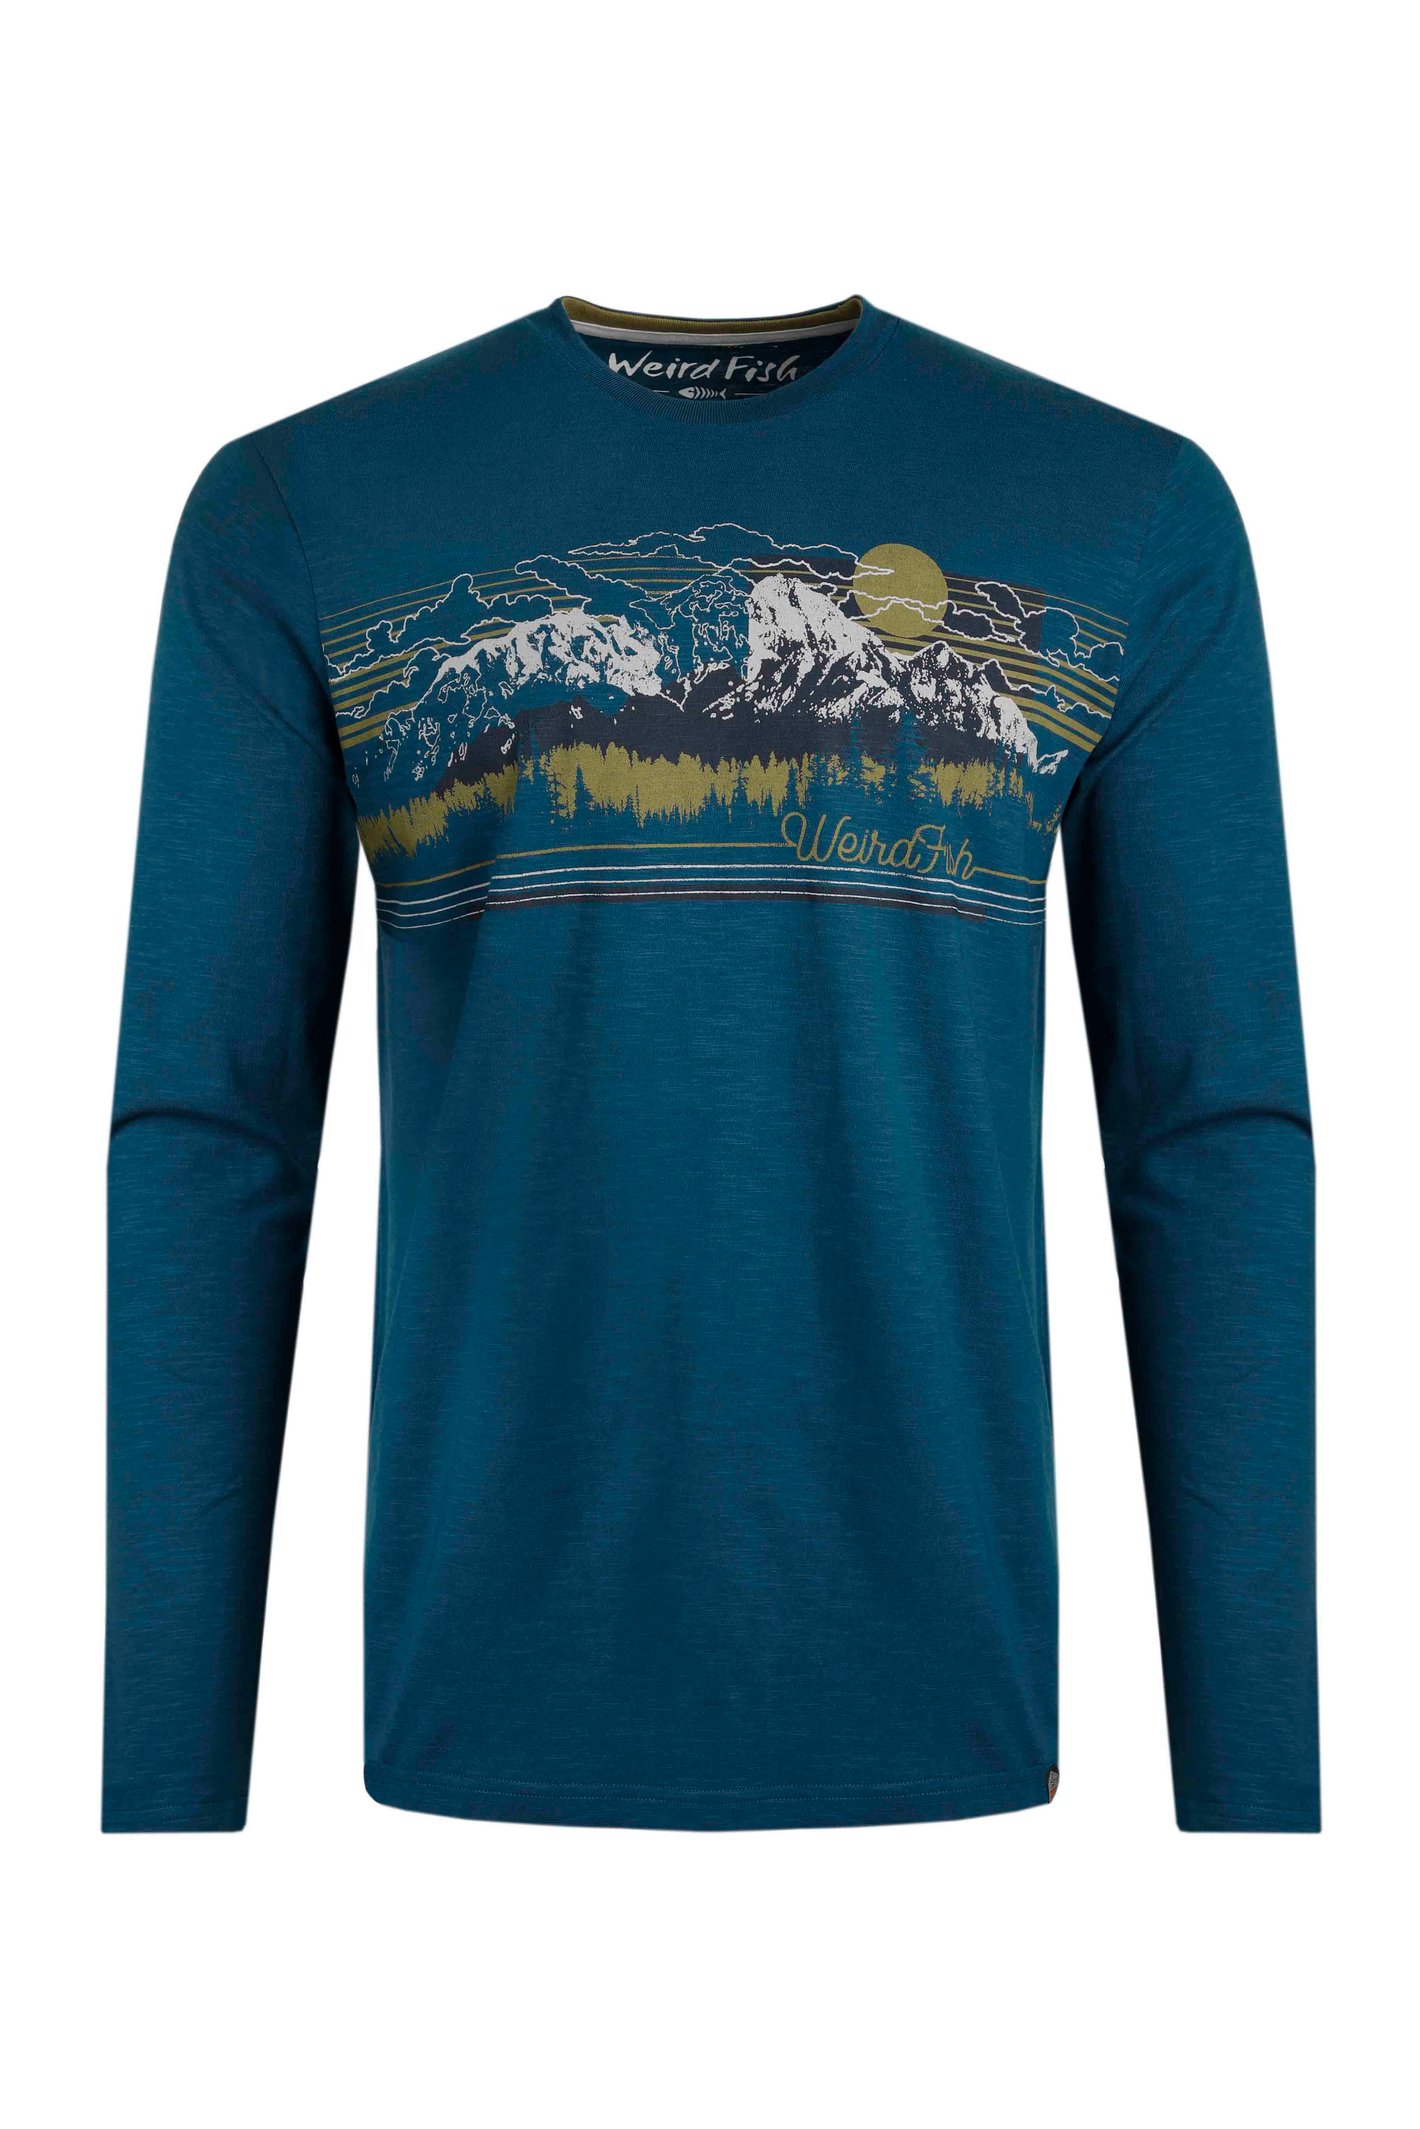 Weird Fish Skyscape Organic Long Sleeve Graphic T-Shirt Cobalt Blue Size XL